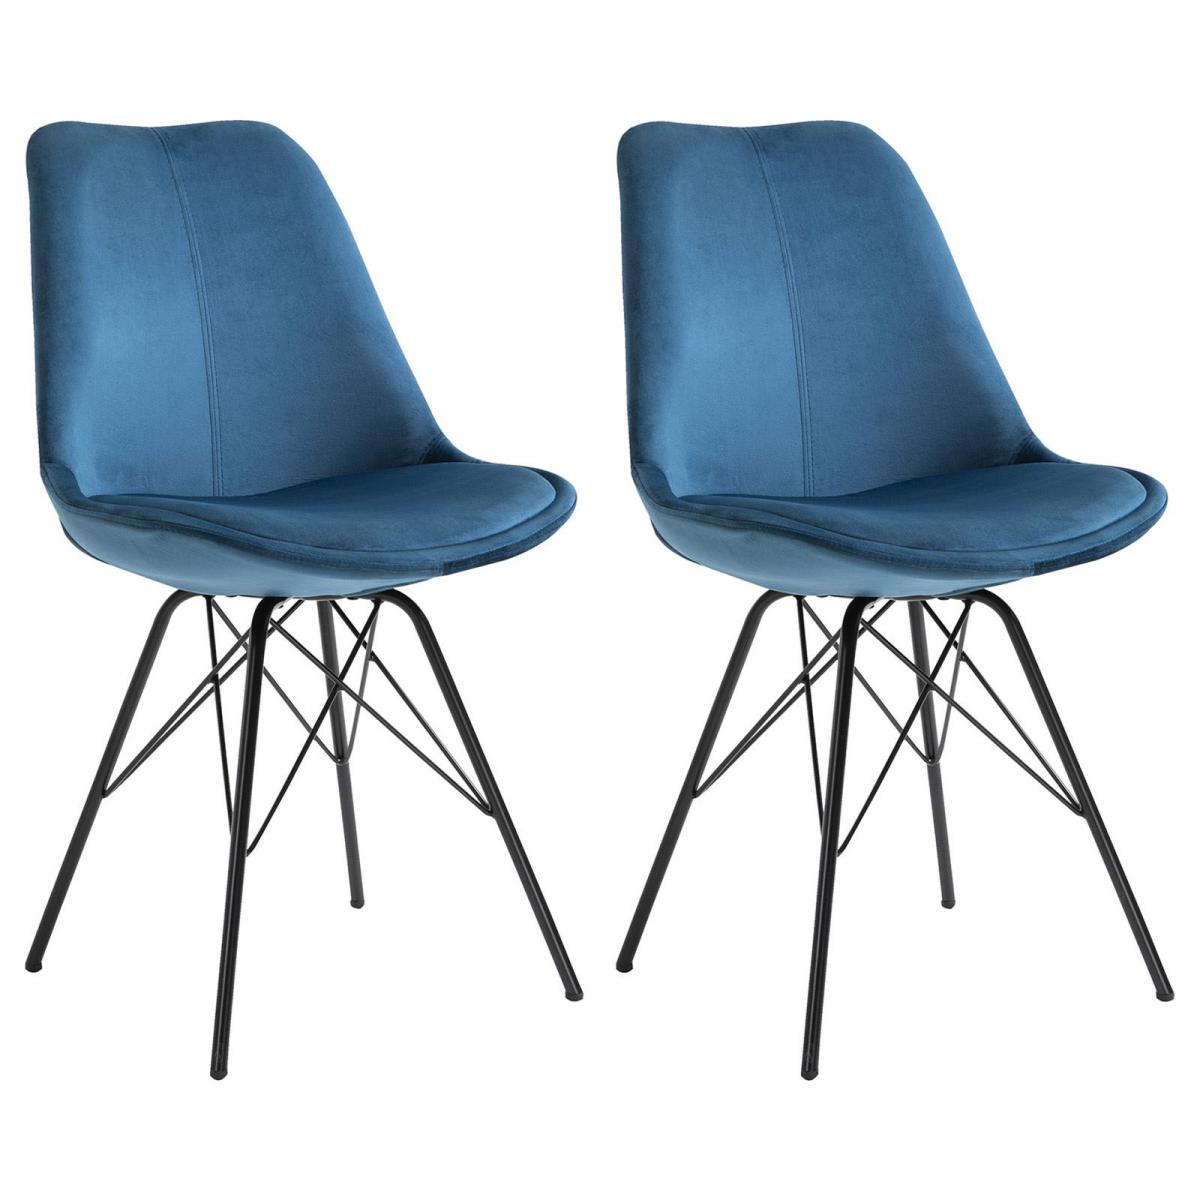 Idimex - Lot de 2 chaises EVEREST, en velours bleu - Chaises